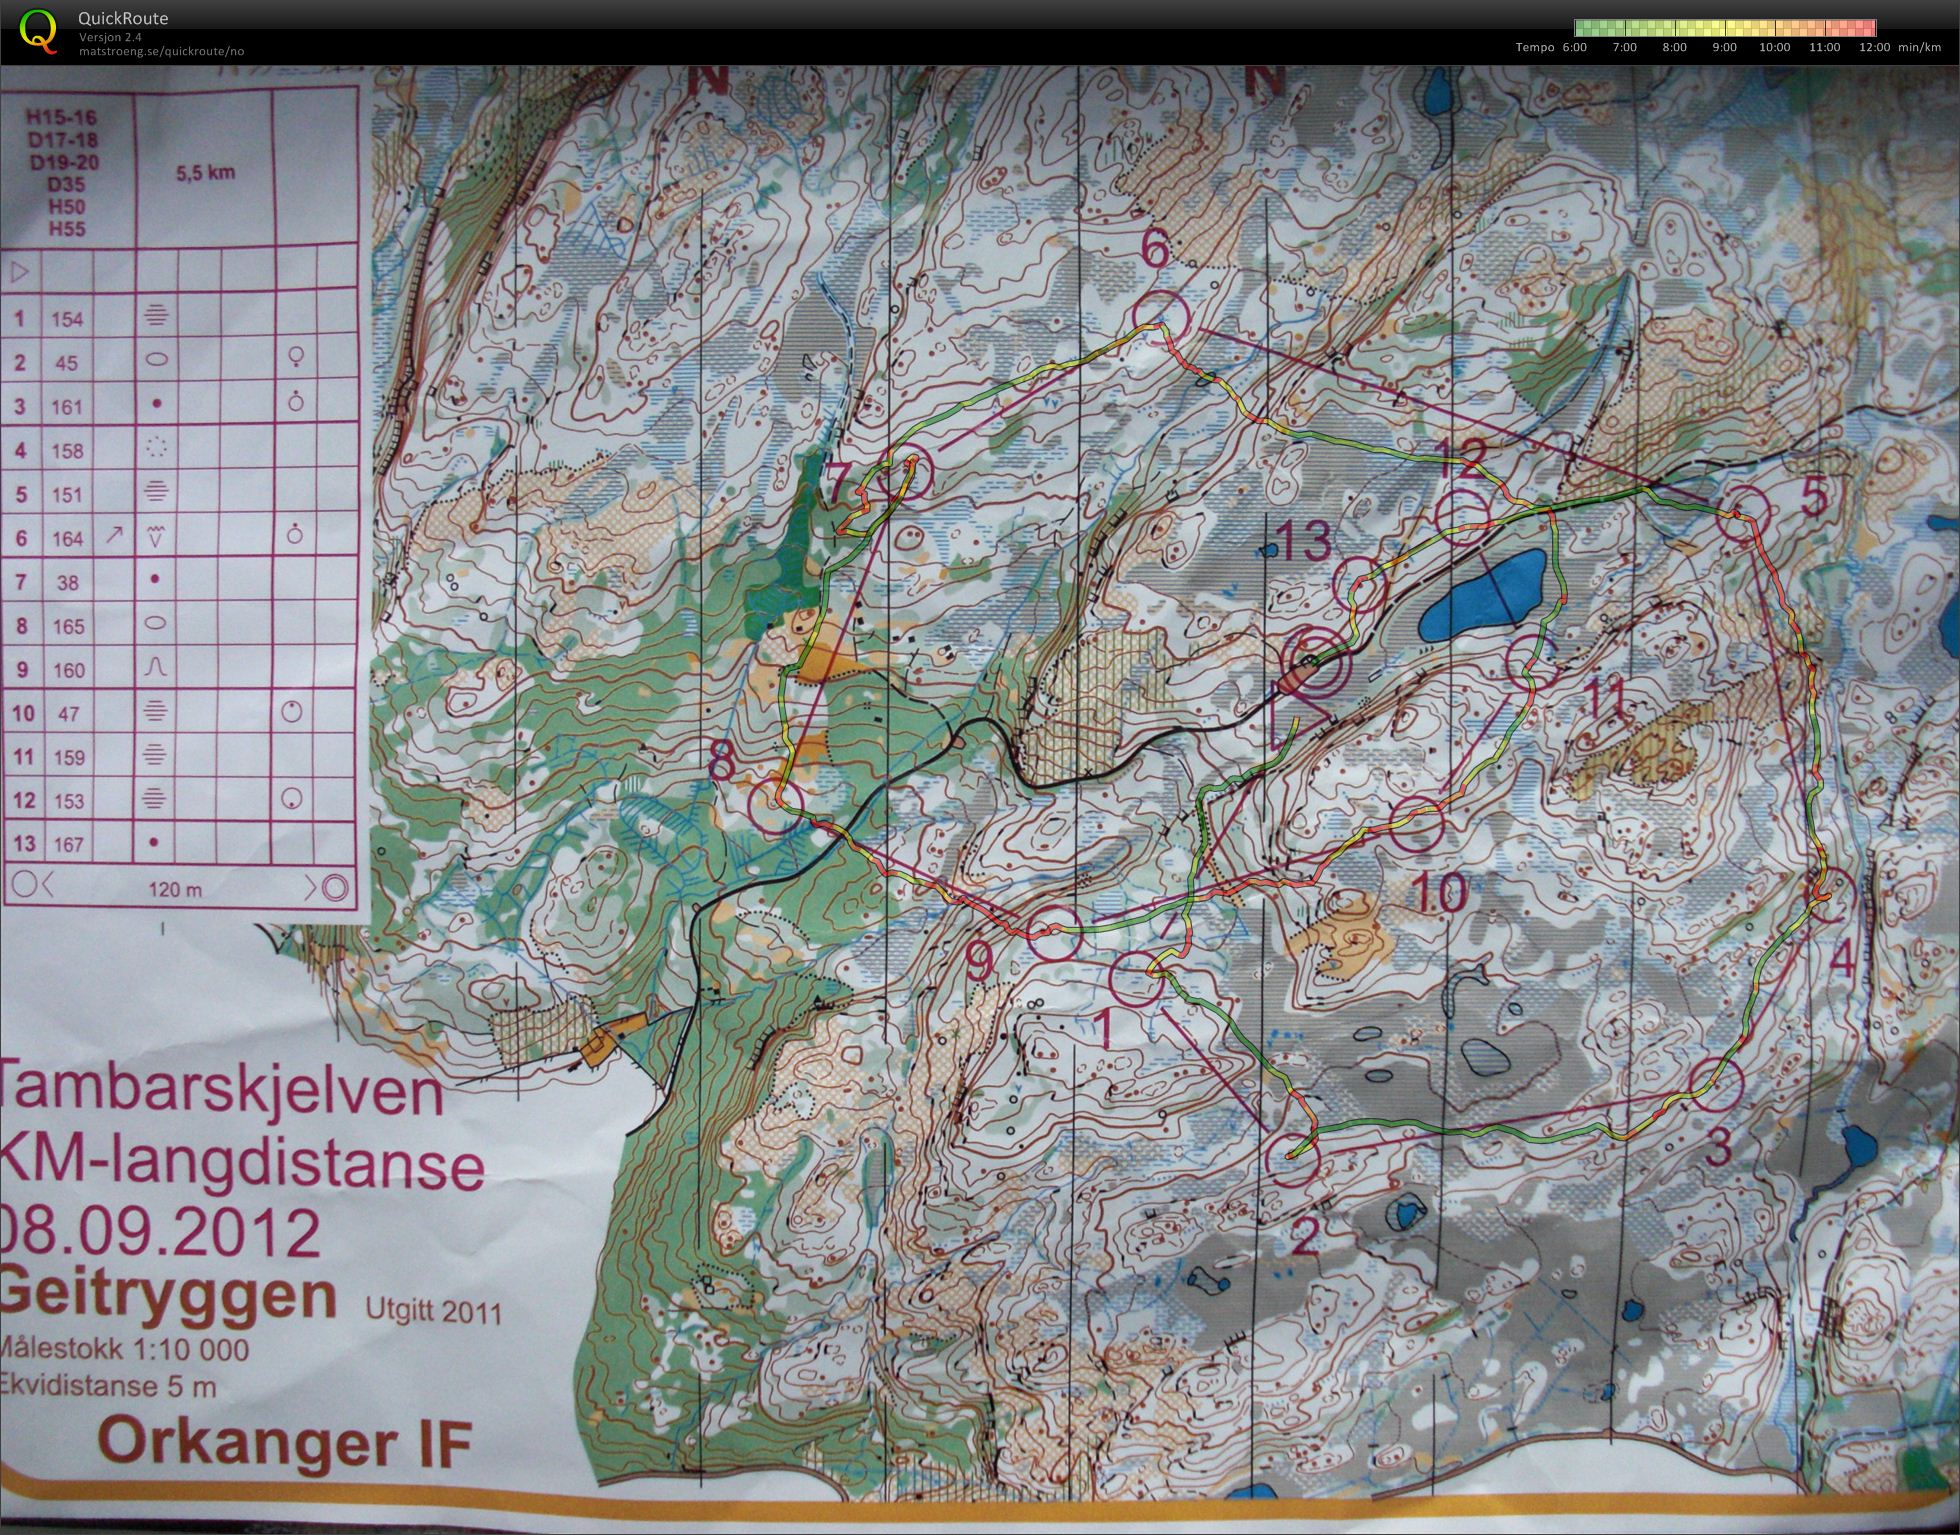 KM langdistanse / Tambarskjelven (2012-09-08)